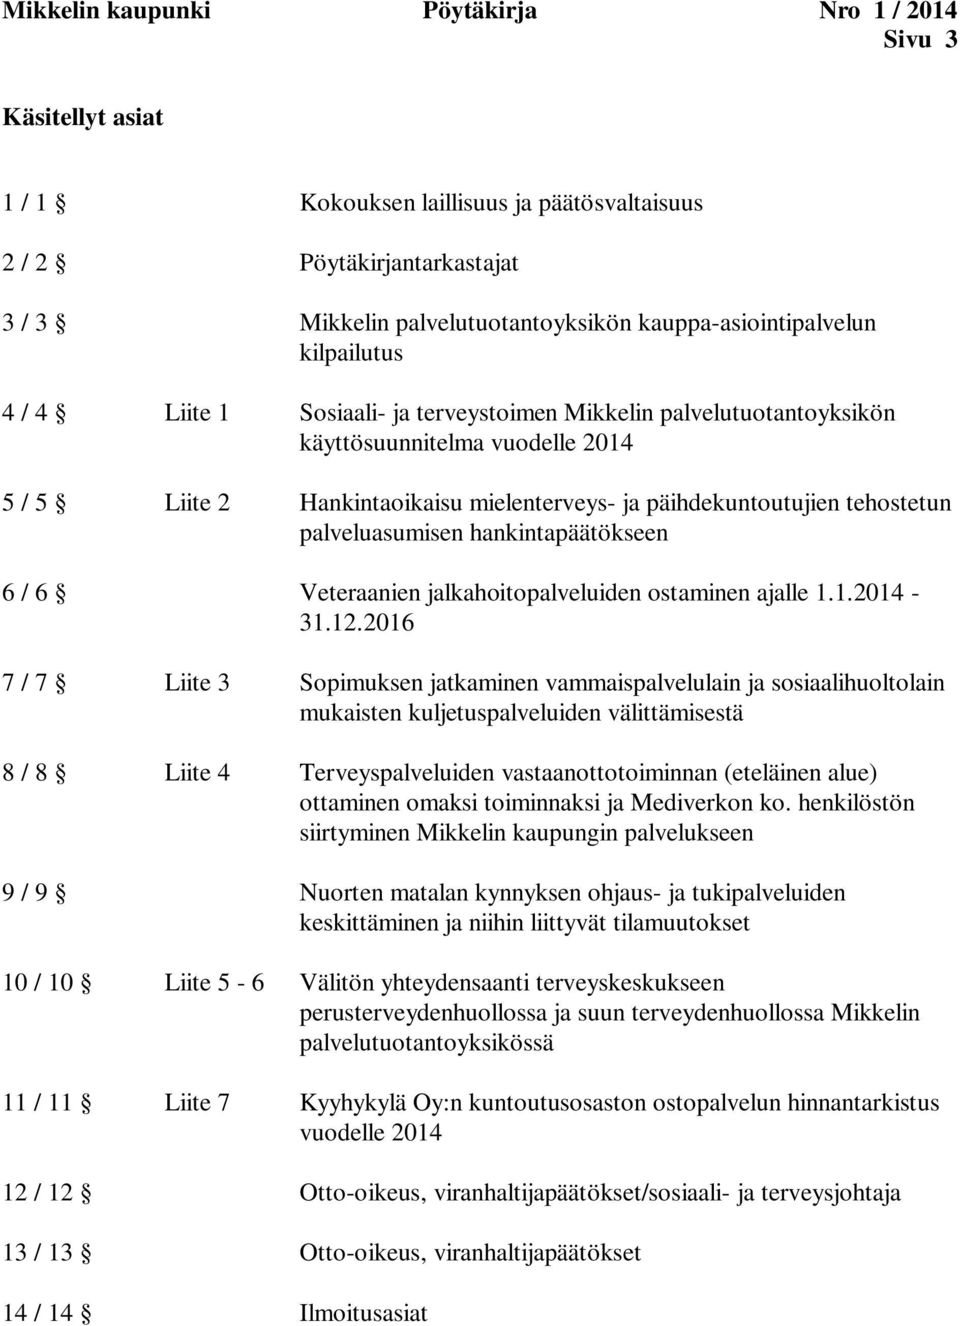 päihdekuntoutujien tehostetun palveluasumisen hankintapäätökseen 6 / 6 Veteraanien jalkahoitopalveluiden ostaminen ajalle 1.1.2014-31.12.